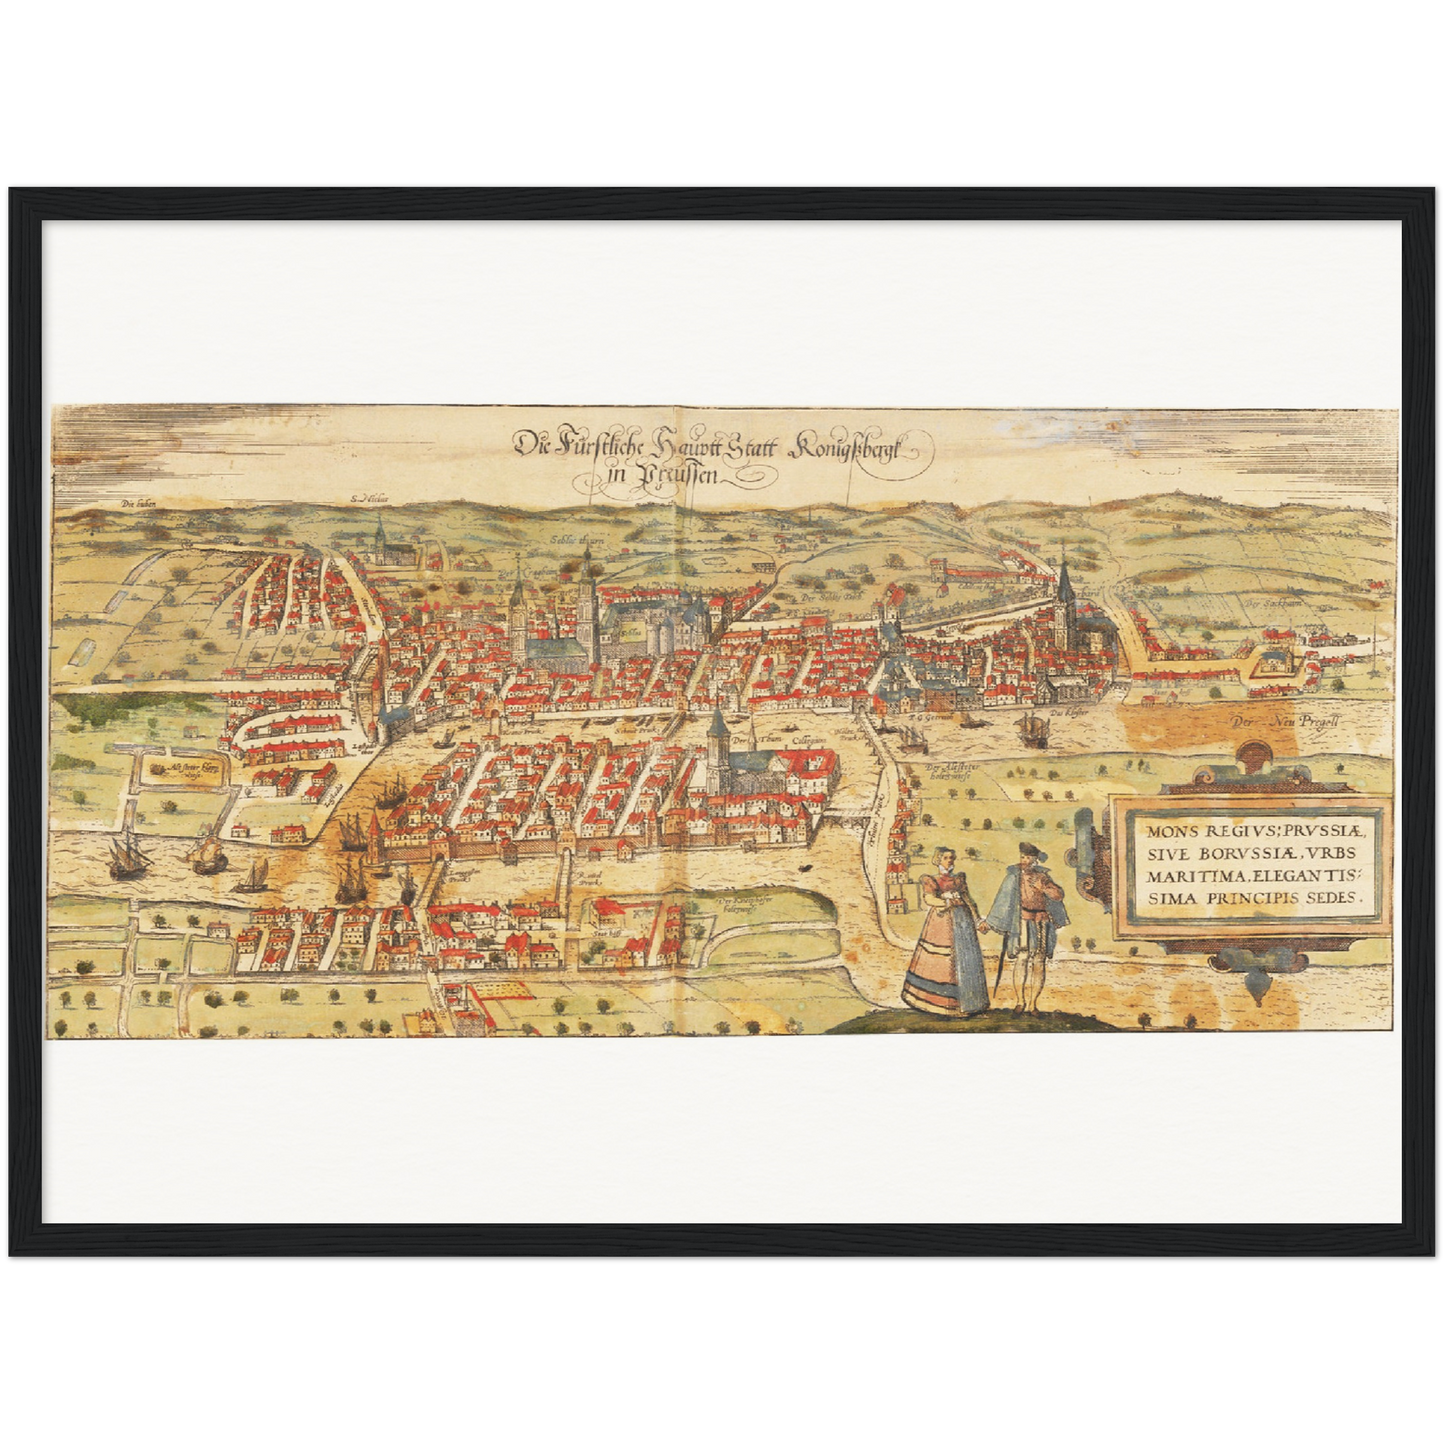 Historische Stadtansicht Königsberg um 1582